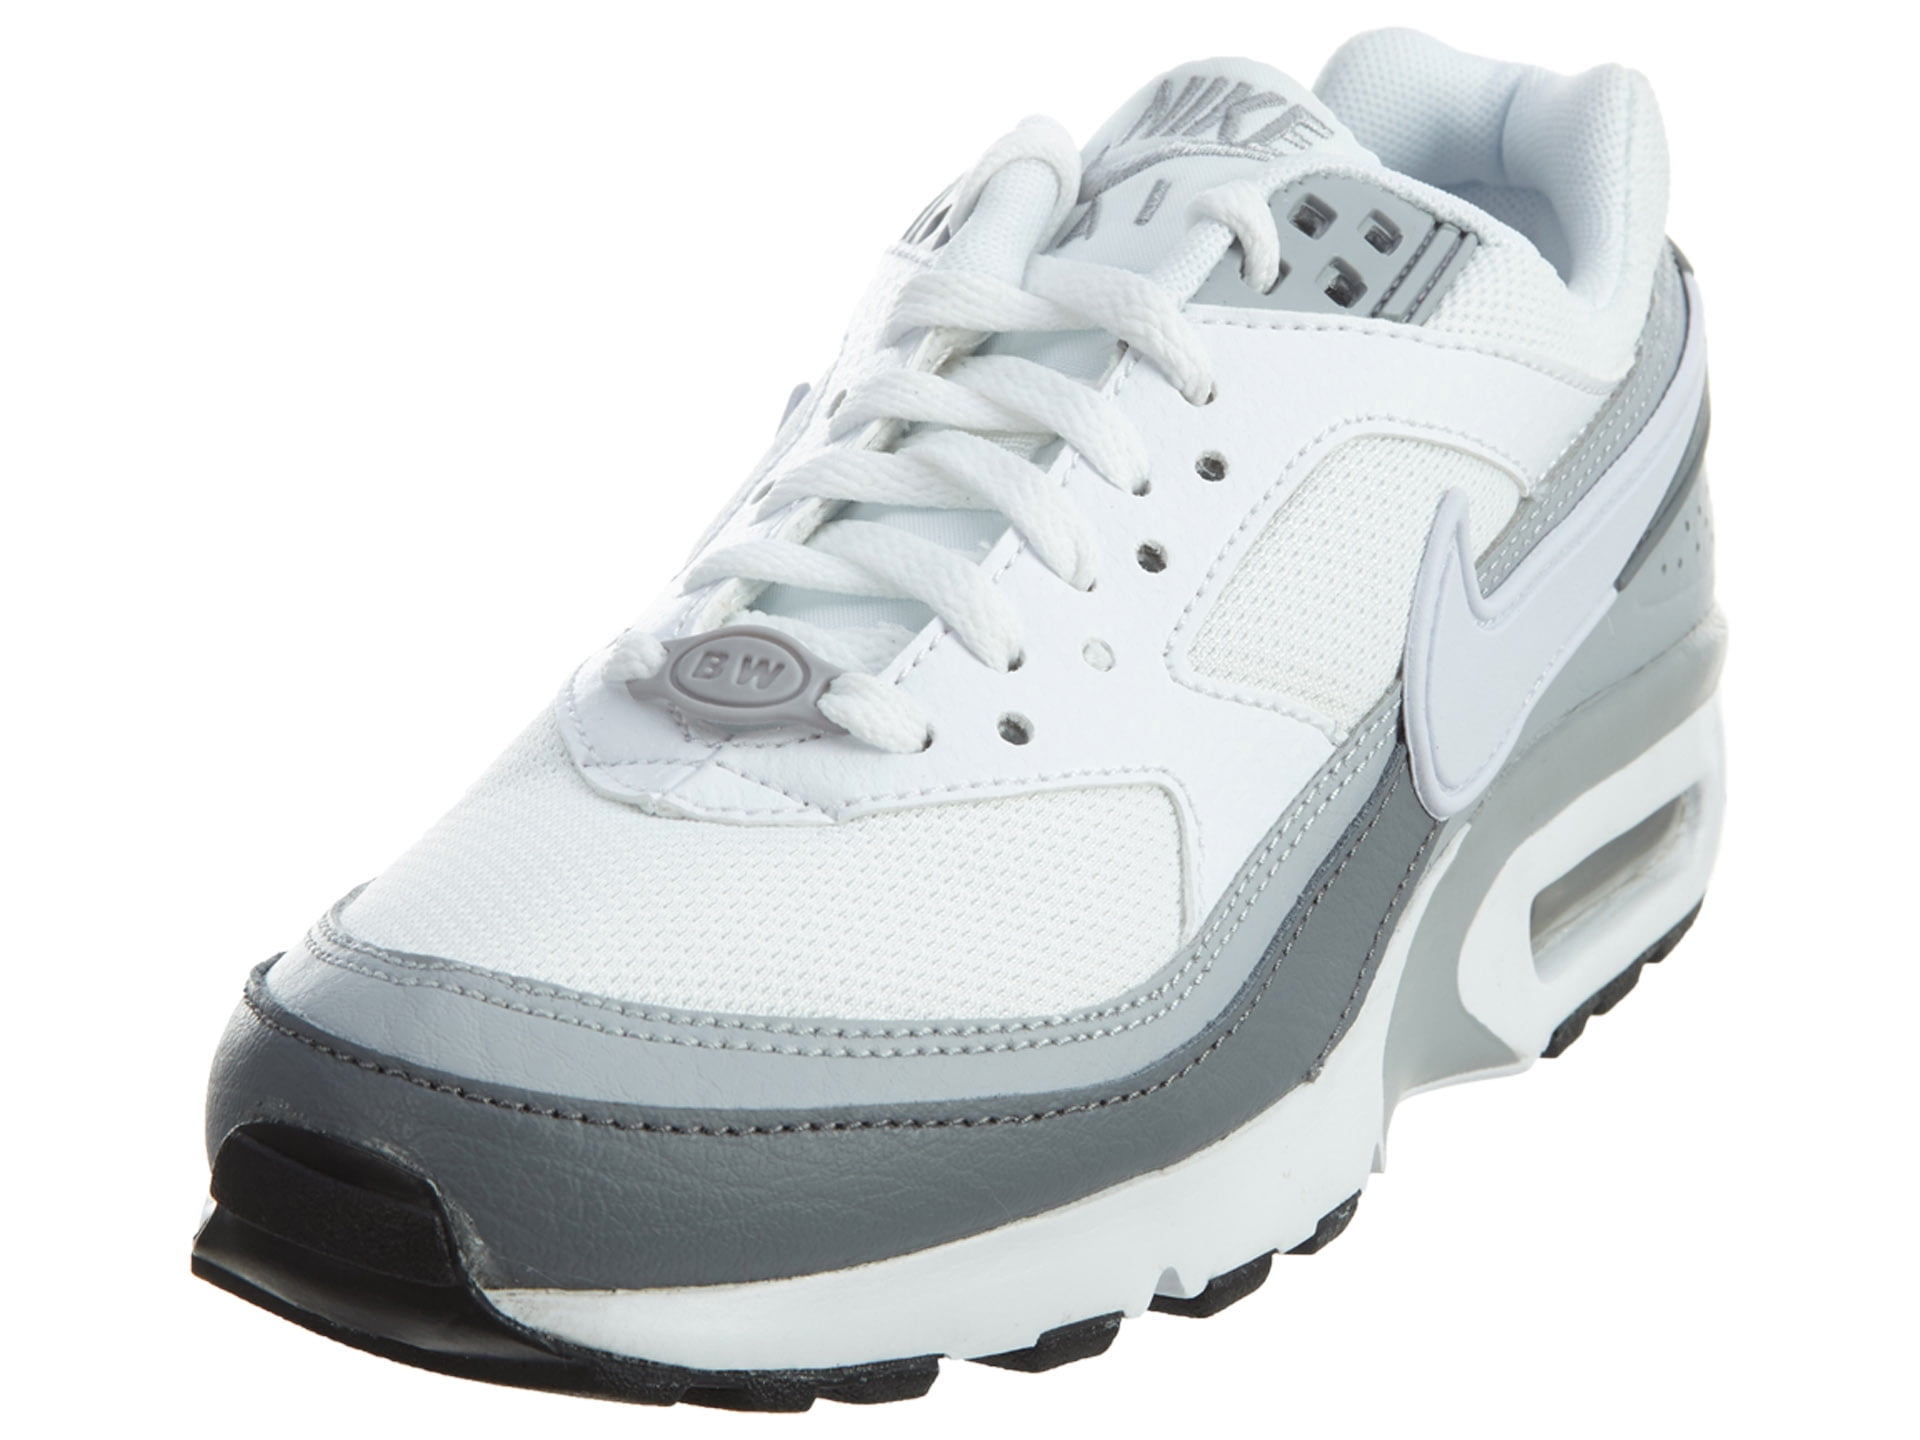 Werkgever actie vervaldatum Nike Air Max BW Big Kids' Shoes Wolf Grey/White-Cool Grey-Black 820344-005  - Walmart.com